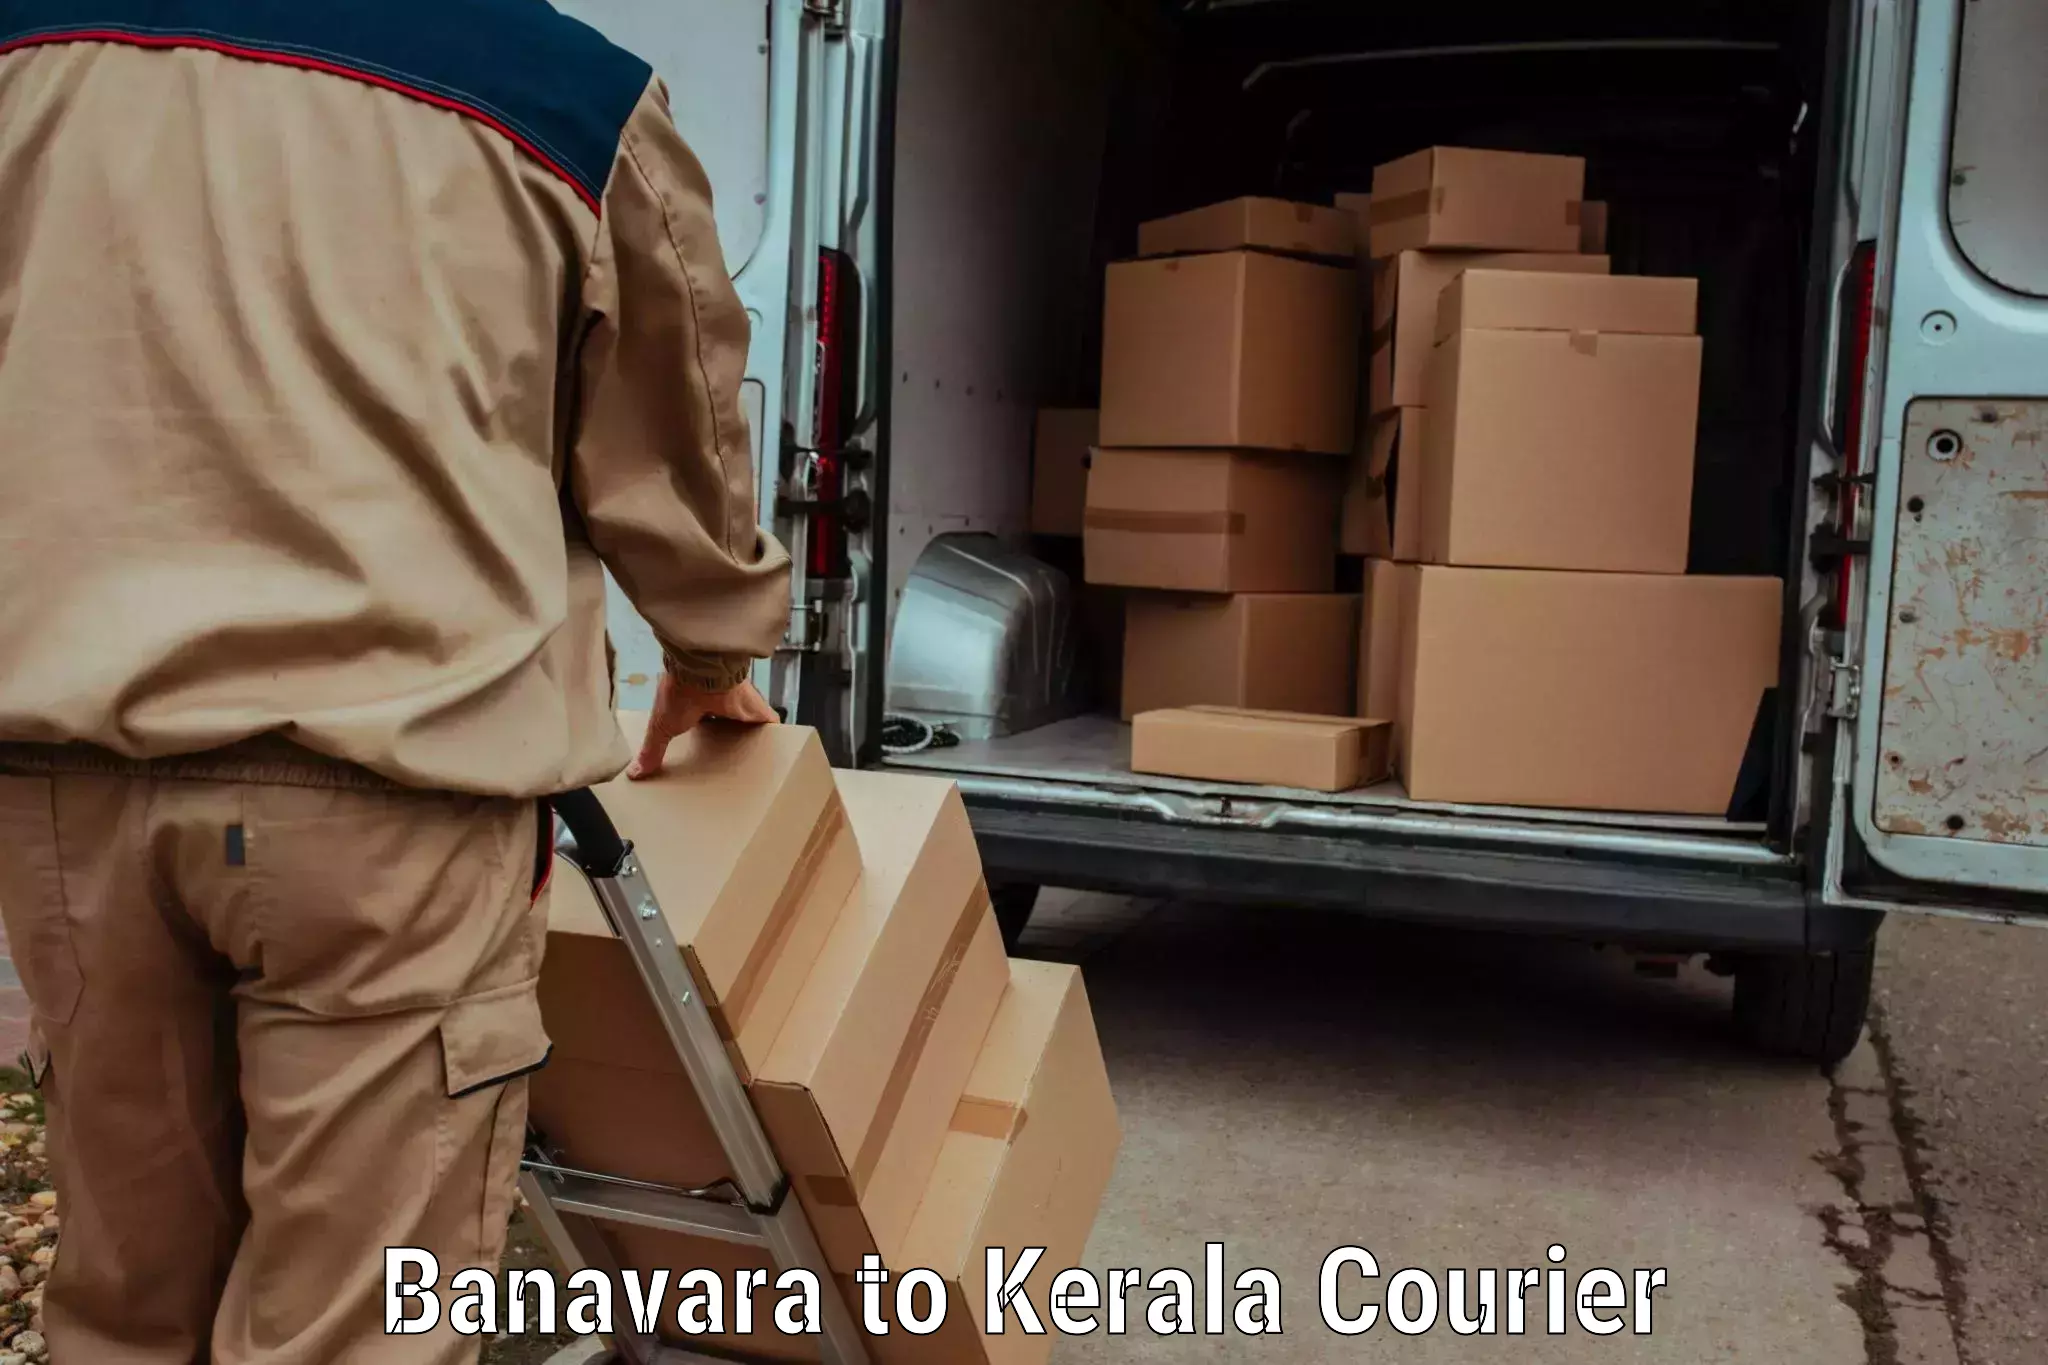 Express mail solutions Banavara to Kerala